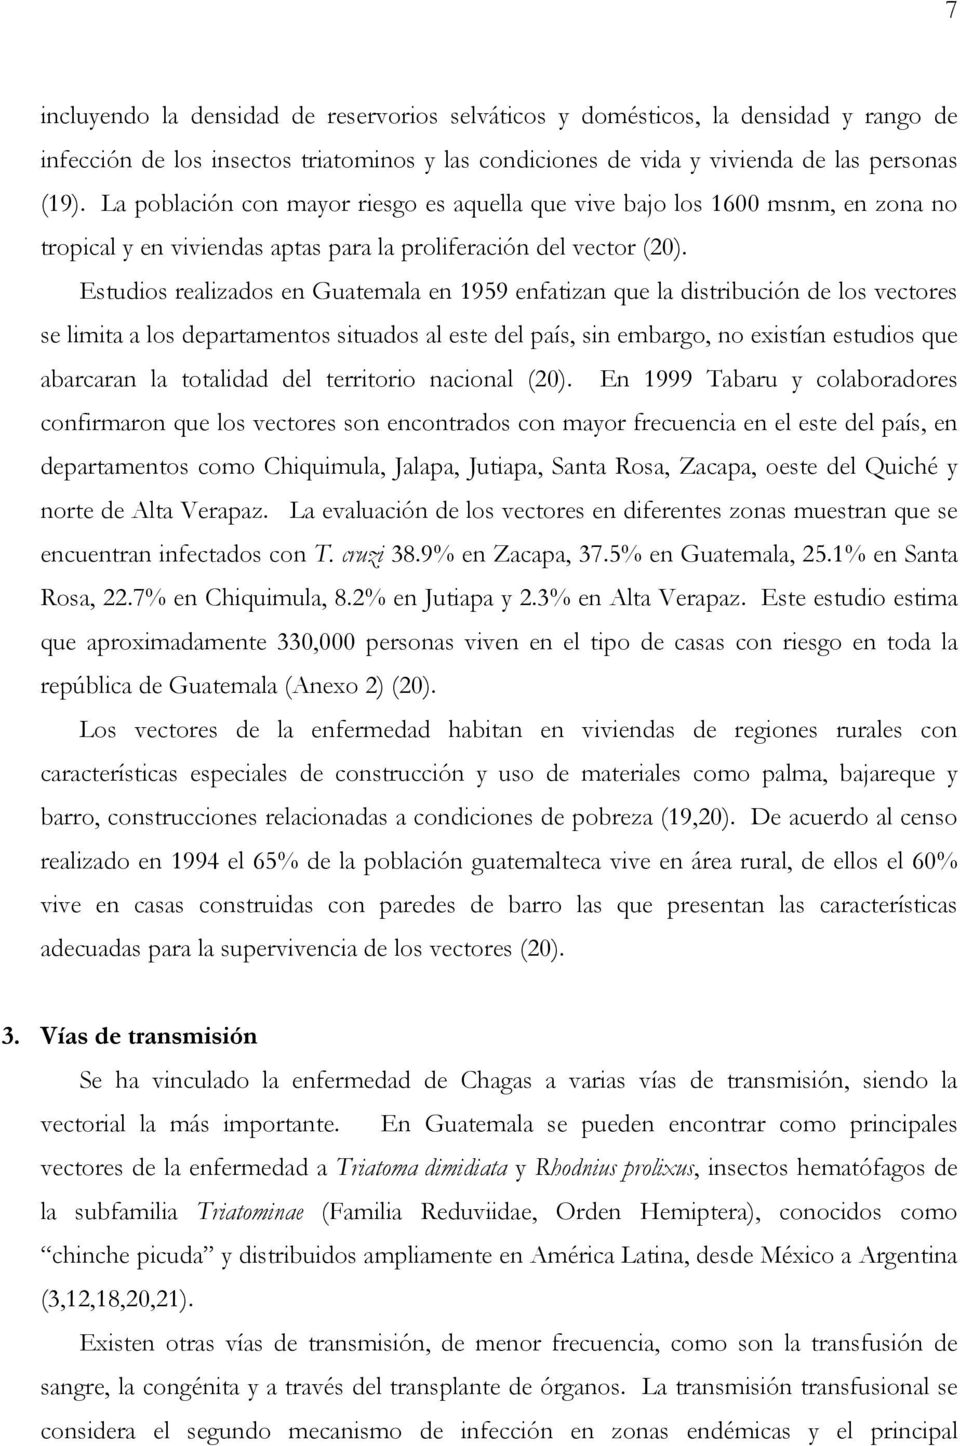 Estudios realizados en Guatemala en 1959 enfatizan que la distribución de los vectores se limita a los departamentos situados al este del país, sin embargo, no existían estudios que abarcaran la